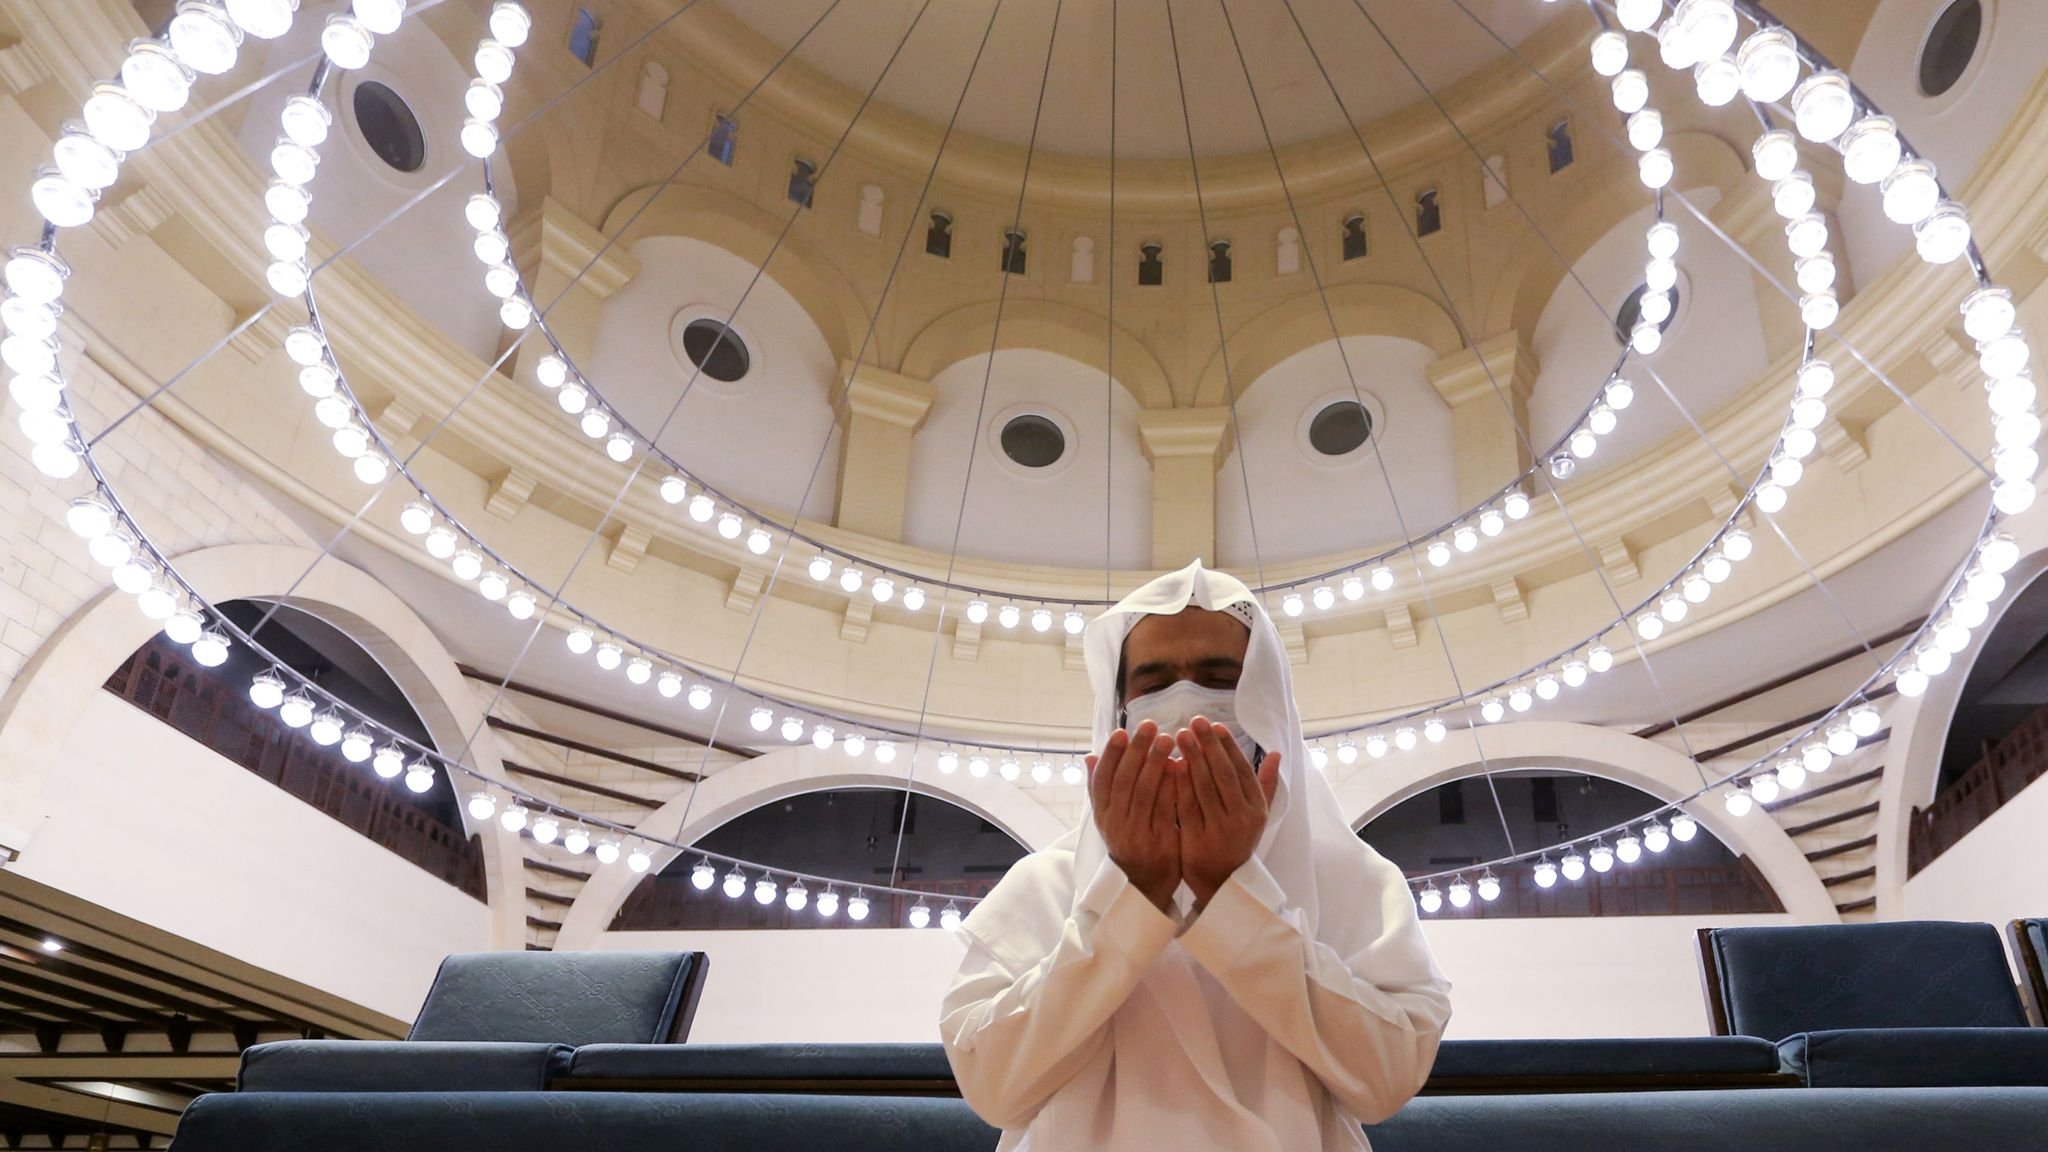 Часы в саудовской аравии. Саудовская Аравия мечеть. Саудия Аравия мечеть. Великая мечеть Мекки – Мекка, Саудовская Аравия. Мечеть Аль-Мимар Саудовская Аравия.